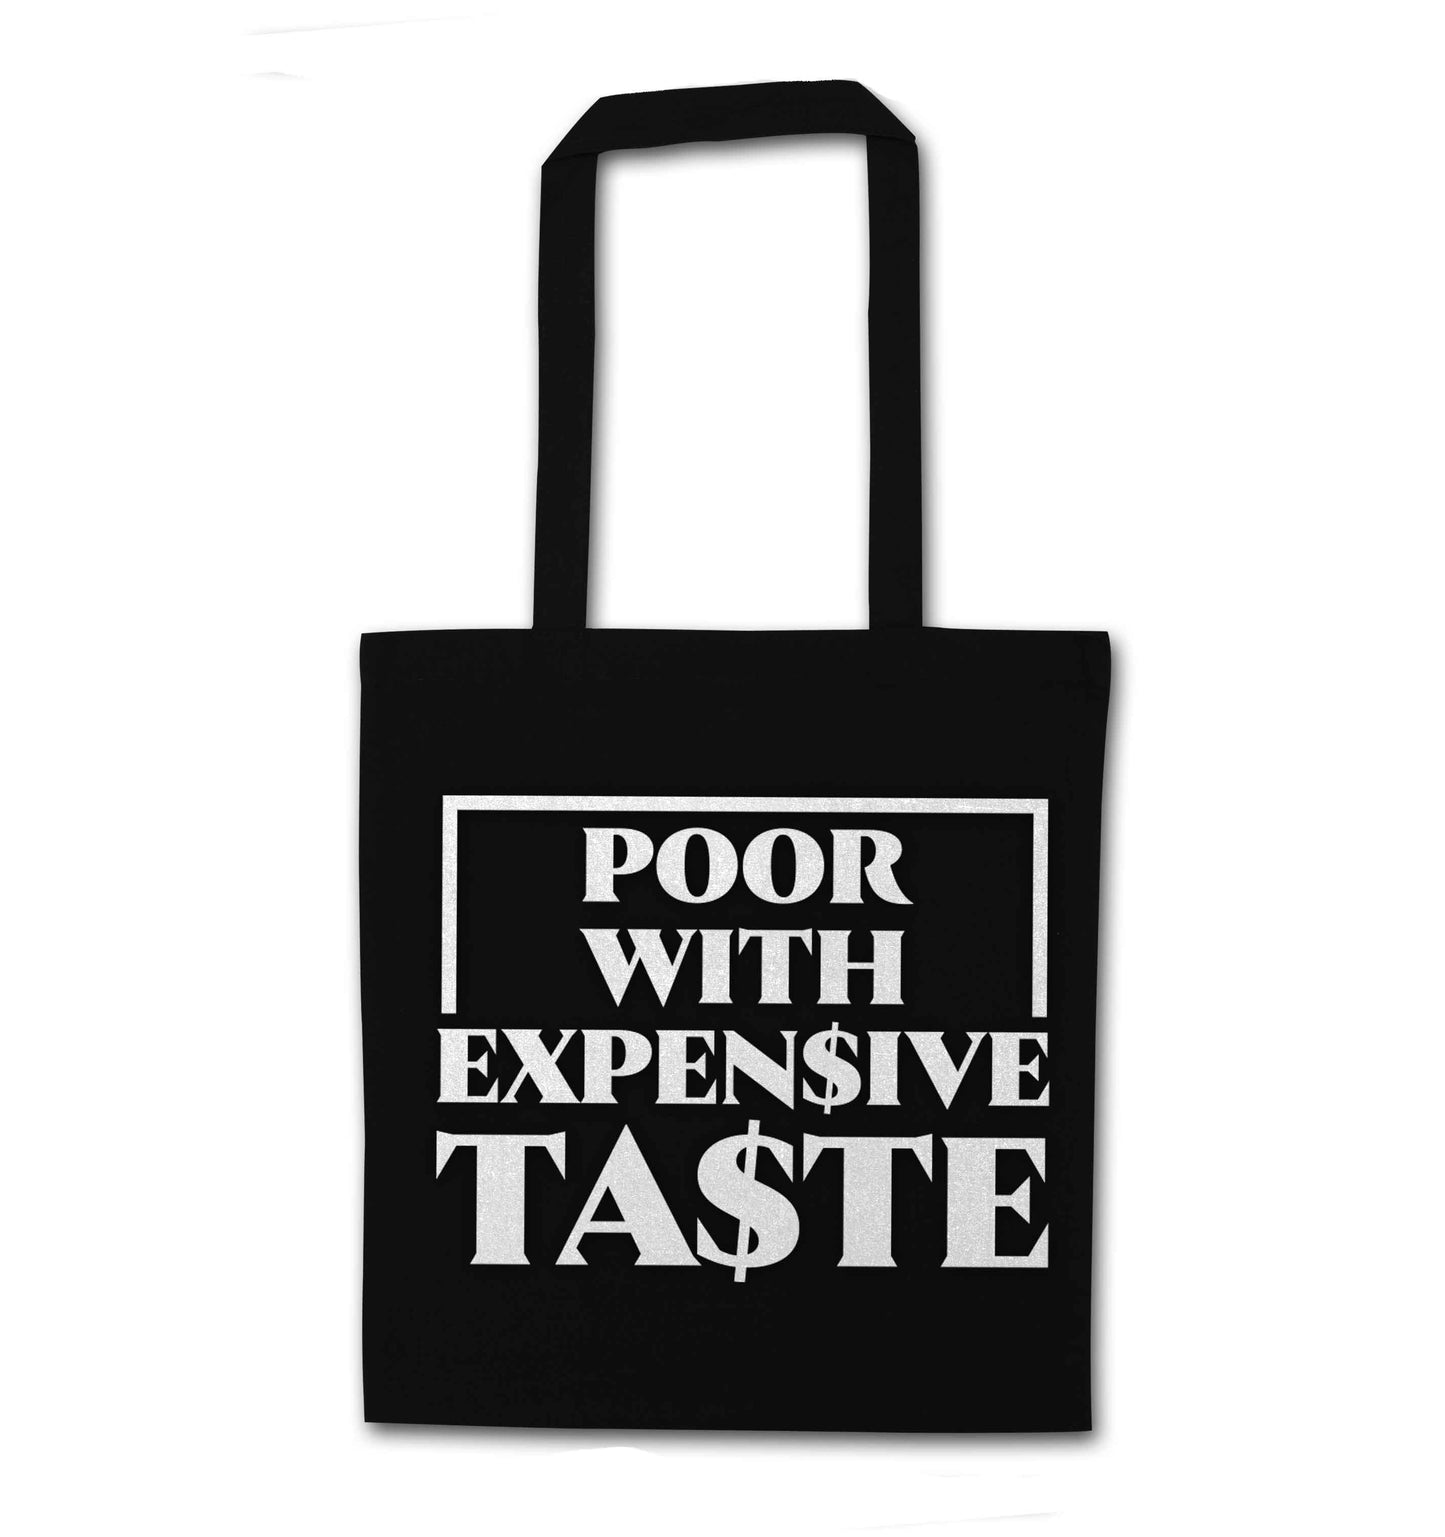 Poor with expensive taste black tote bag